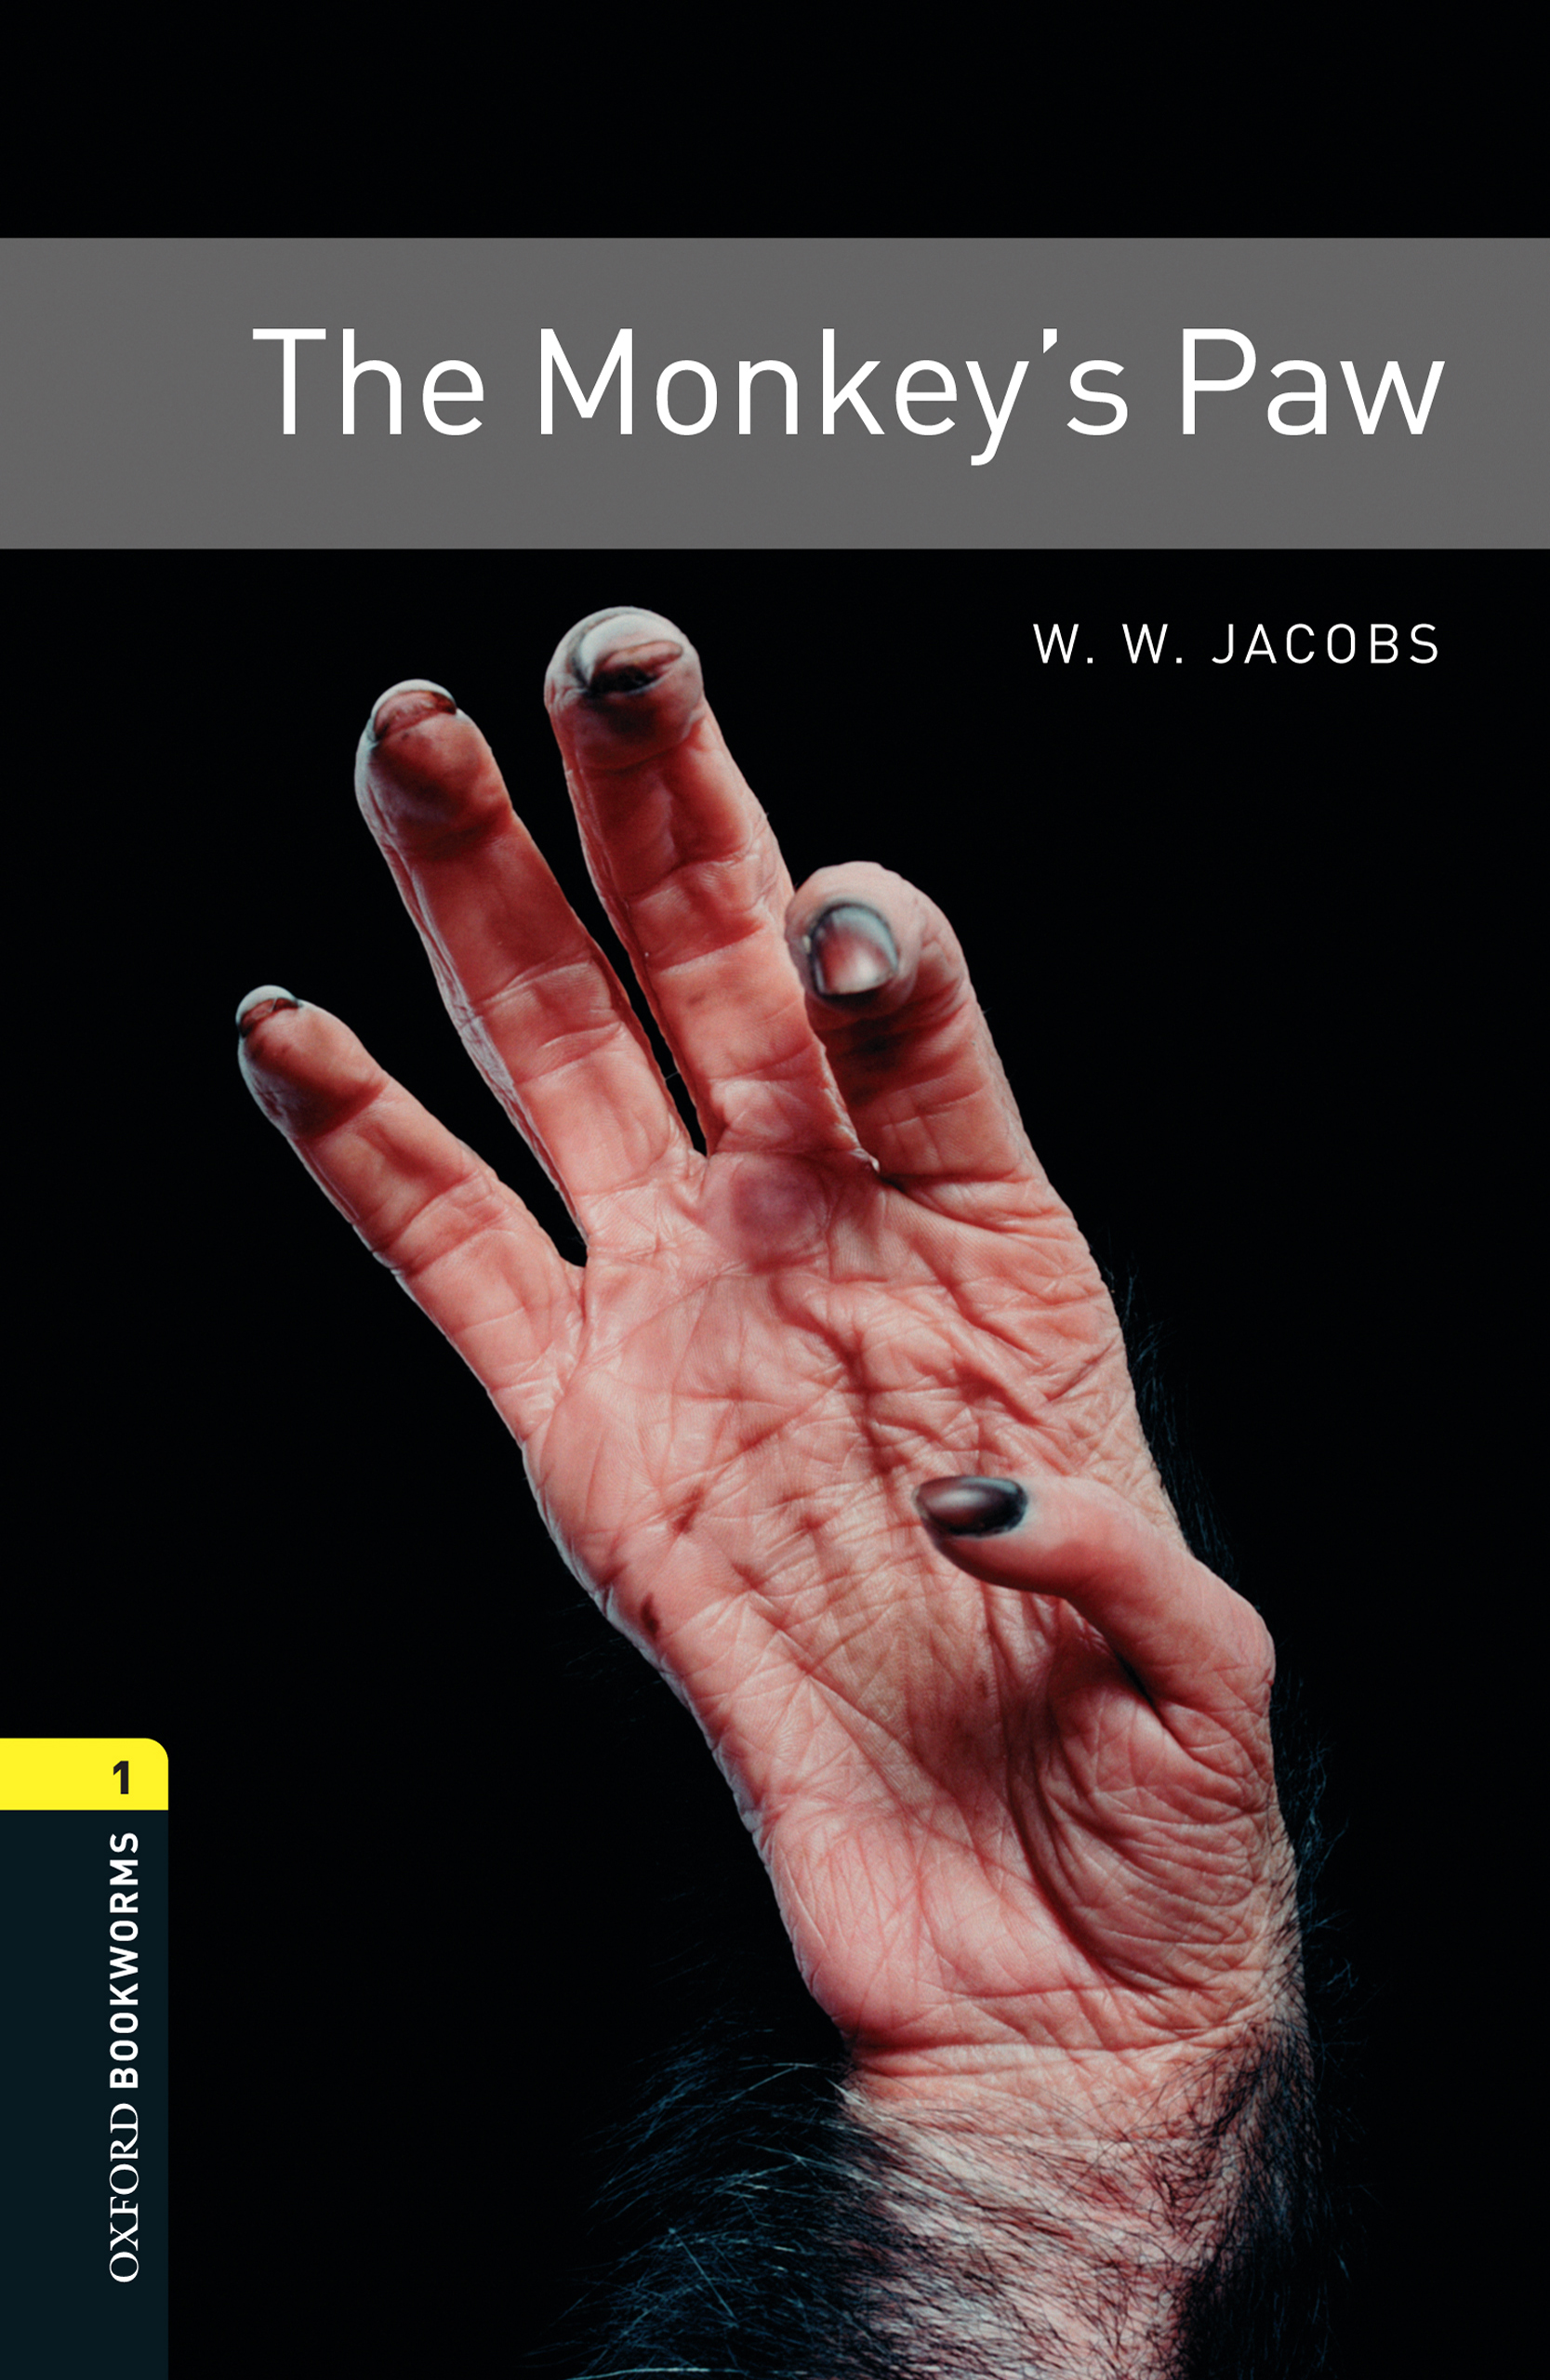 Книга The Monkey's Paw из серии , созданная W. Jacobs, Diane Mowat, может относится к жанру Иностранные языки, Иностранные языки, Зарубежная образовательная литература. Стоимость электронной книги The Monkey's Paw с идентификатором 23573139 составляет 405.87 руб.